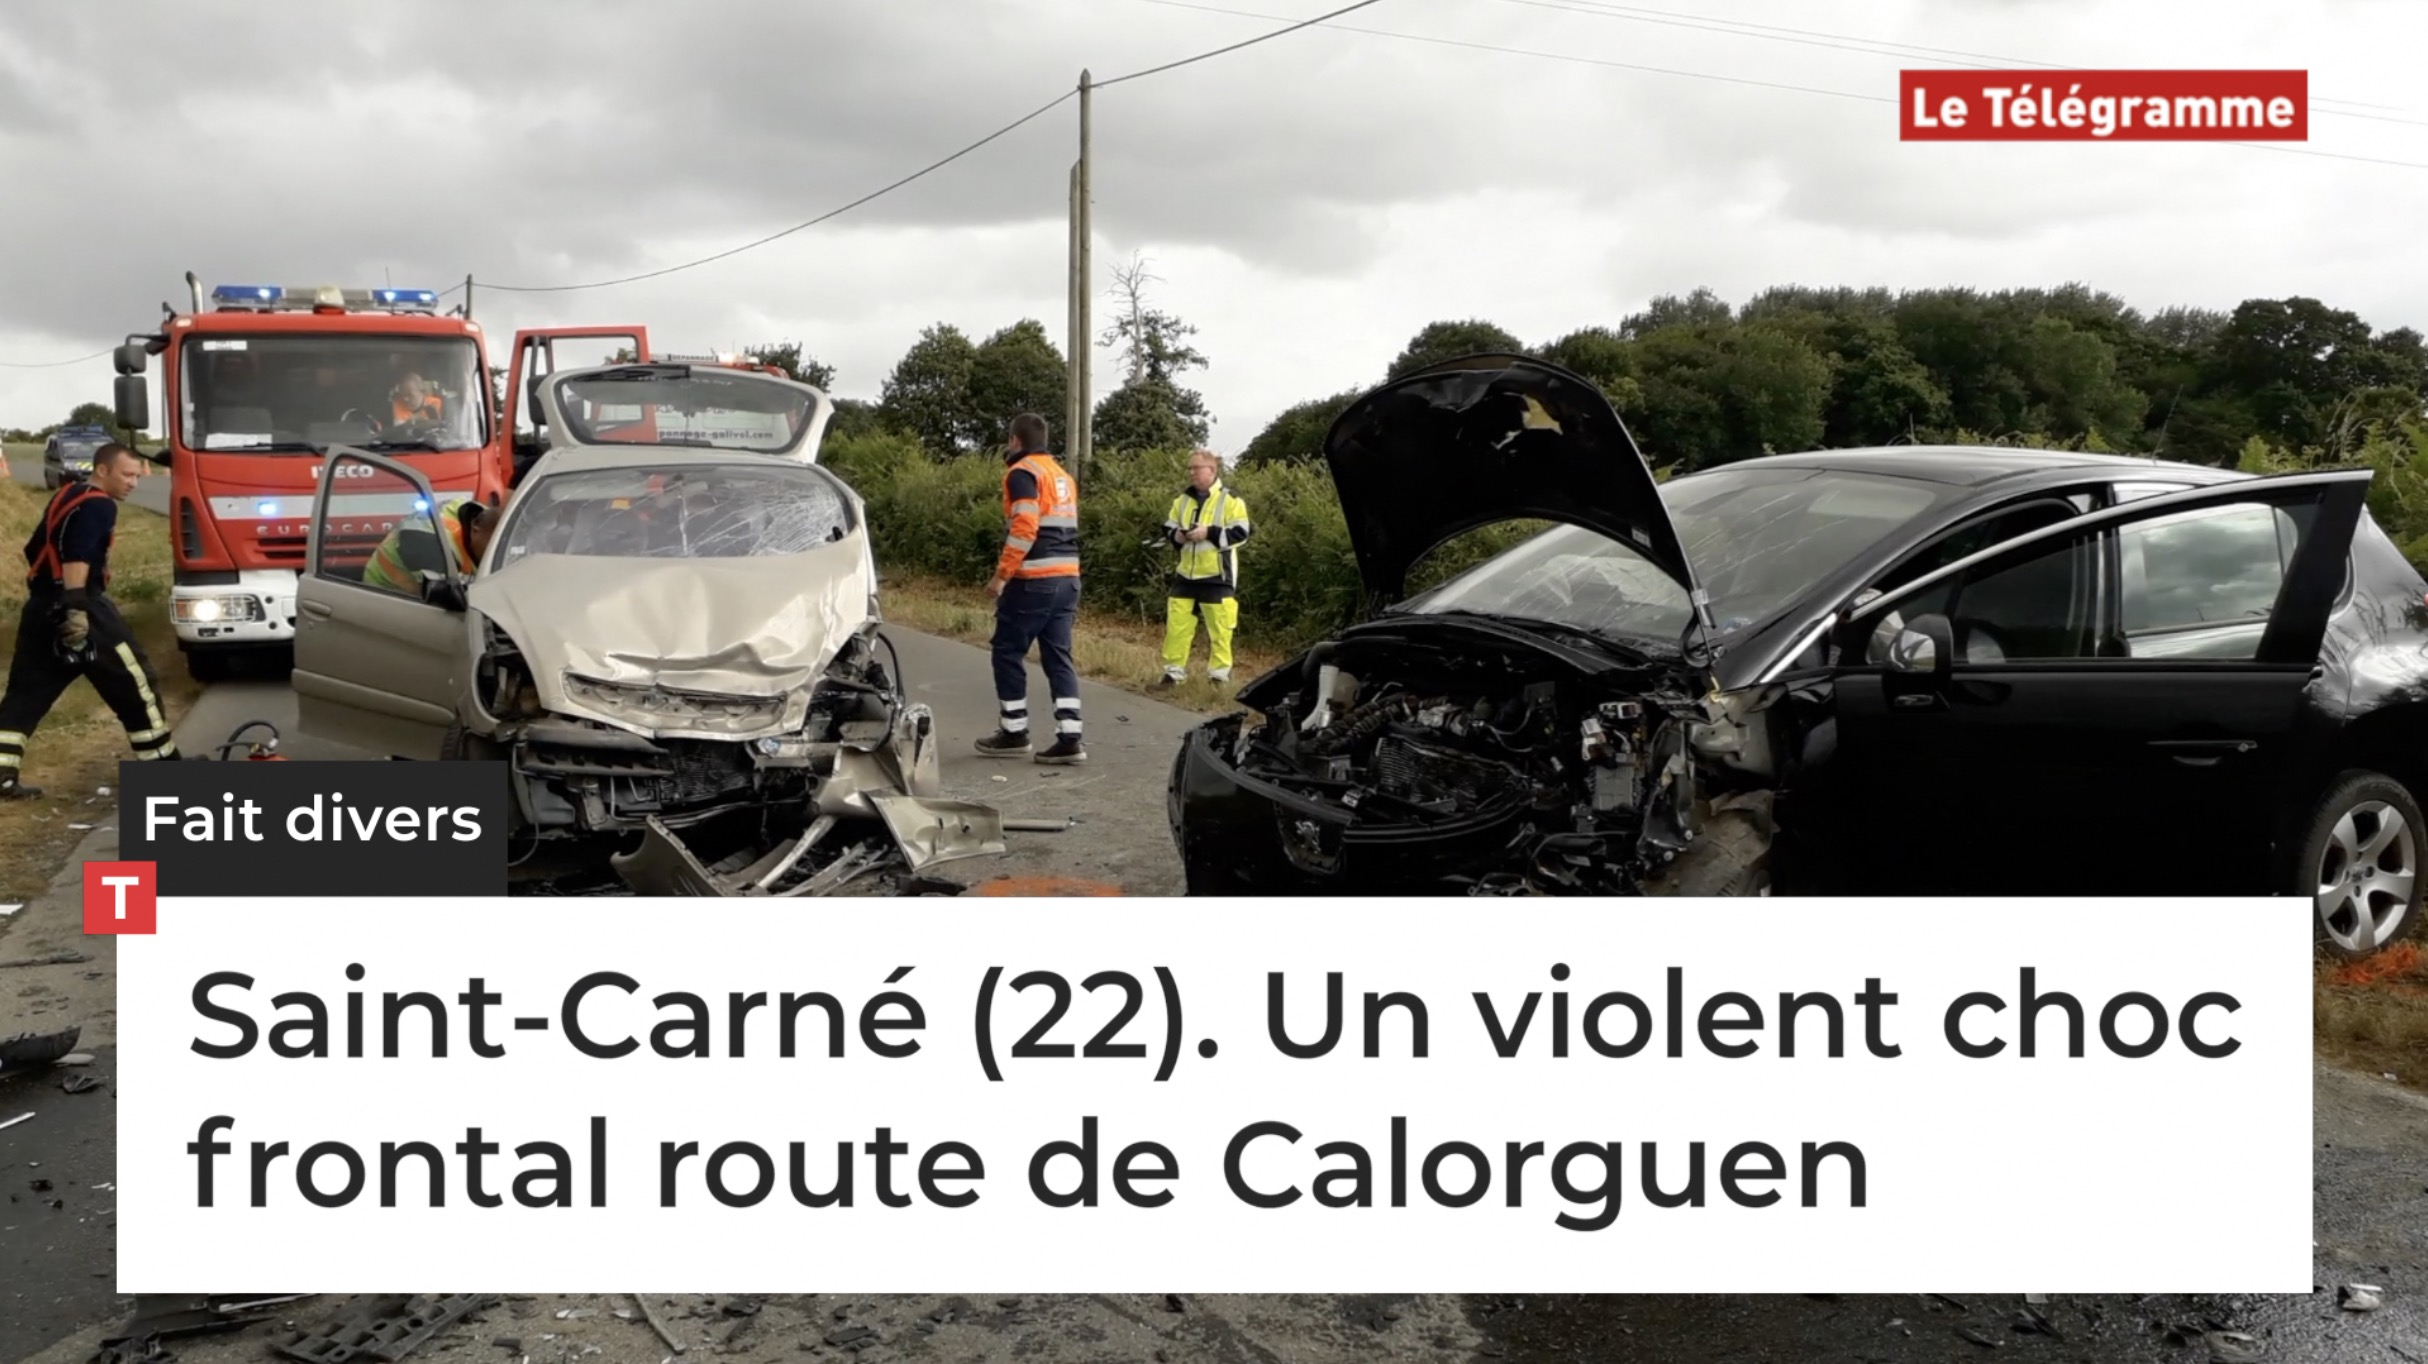 Saint-Carné (22). Un violent choc frontal route de Calorguen (Le Télégramme)